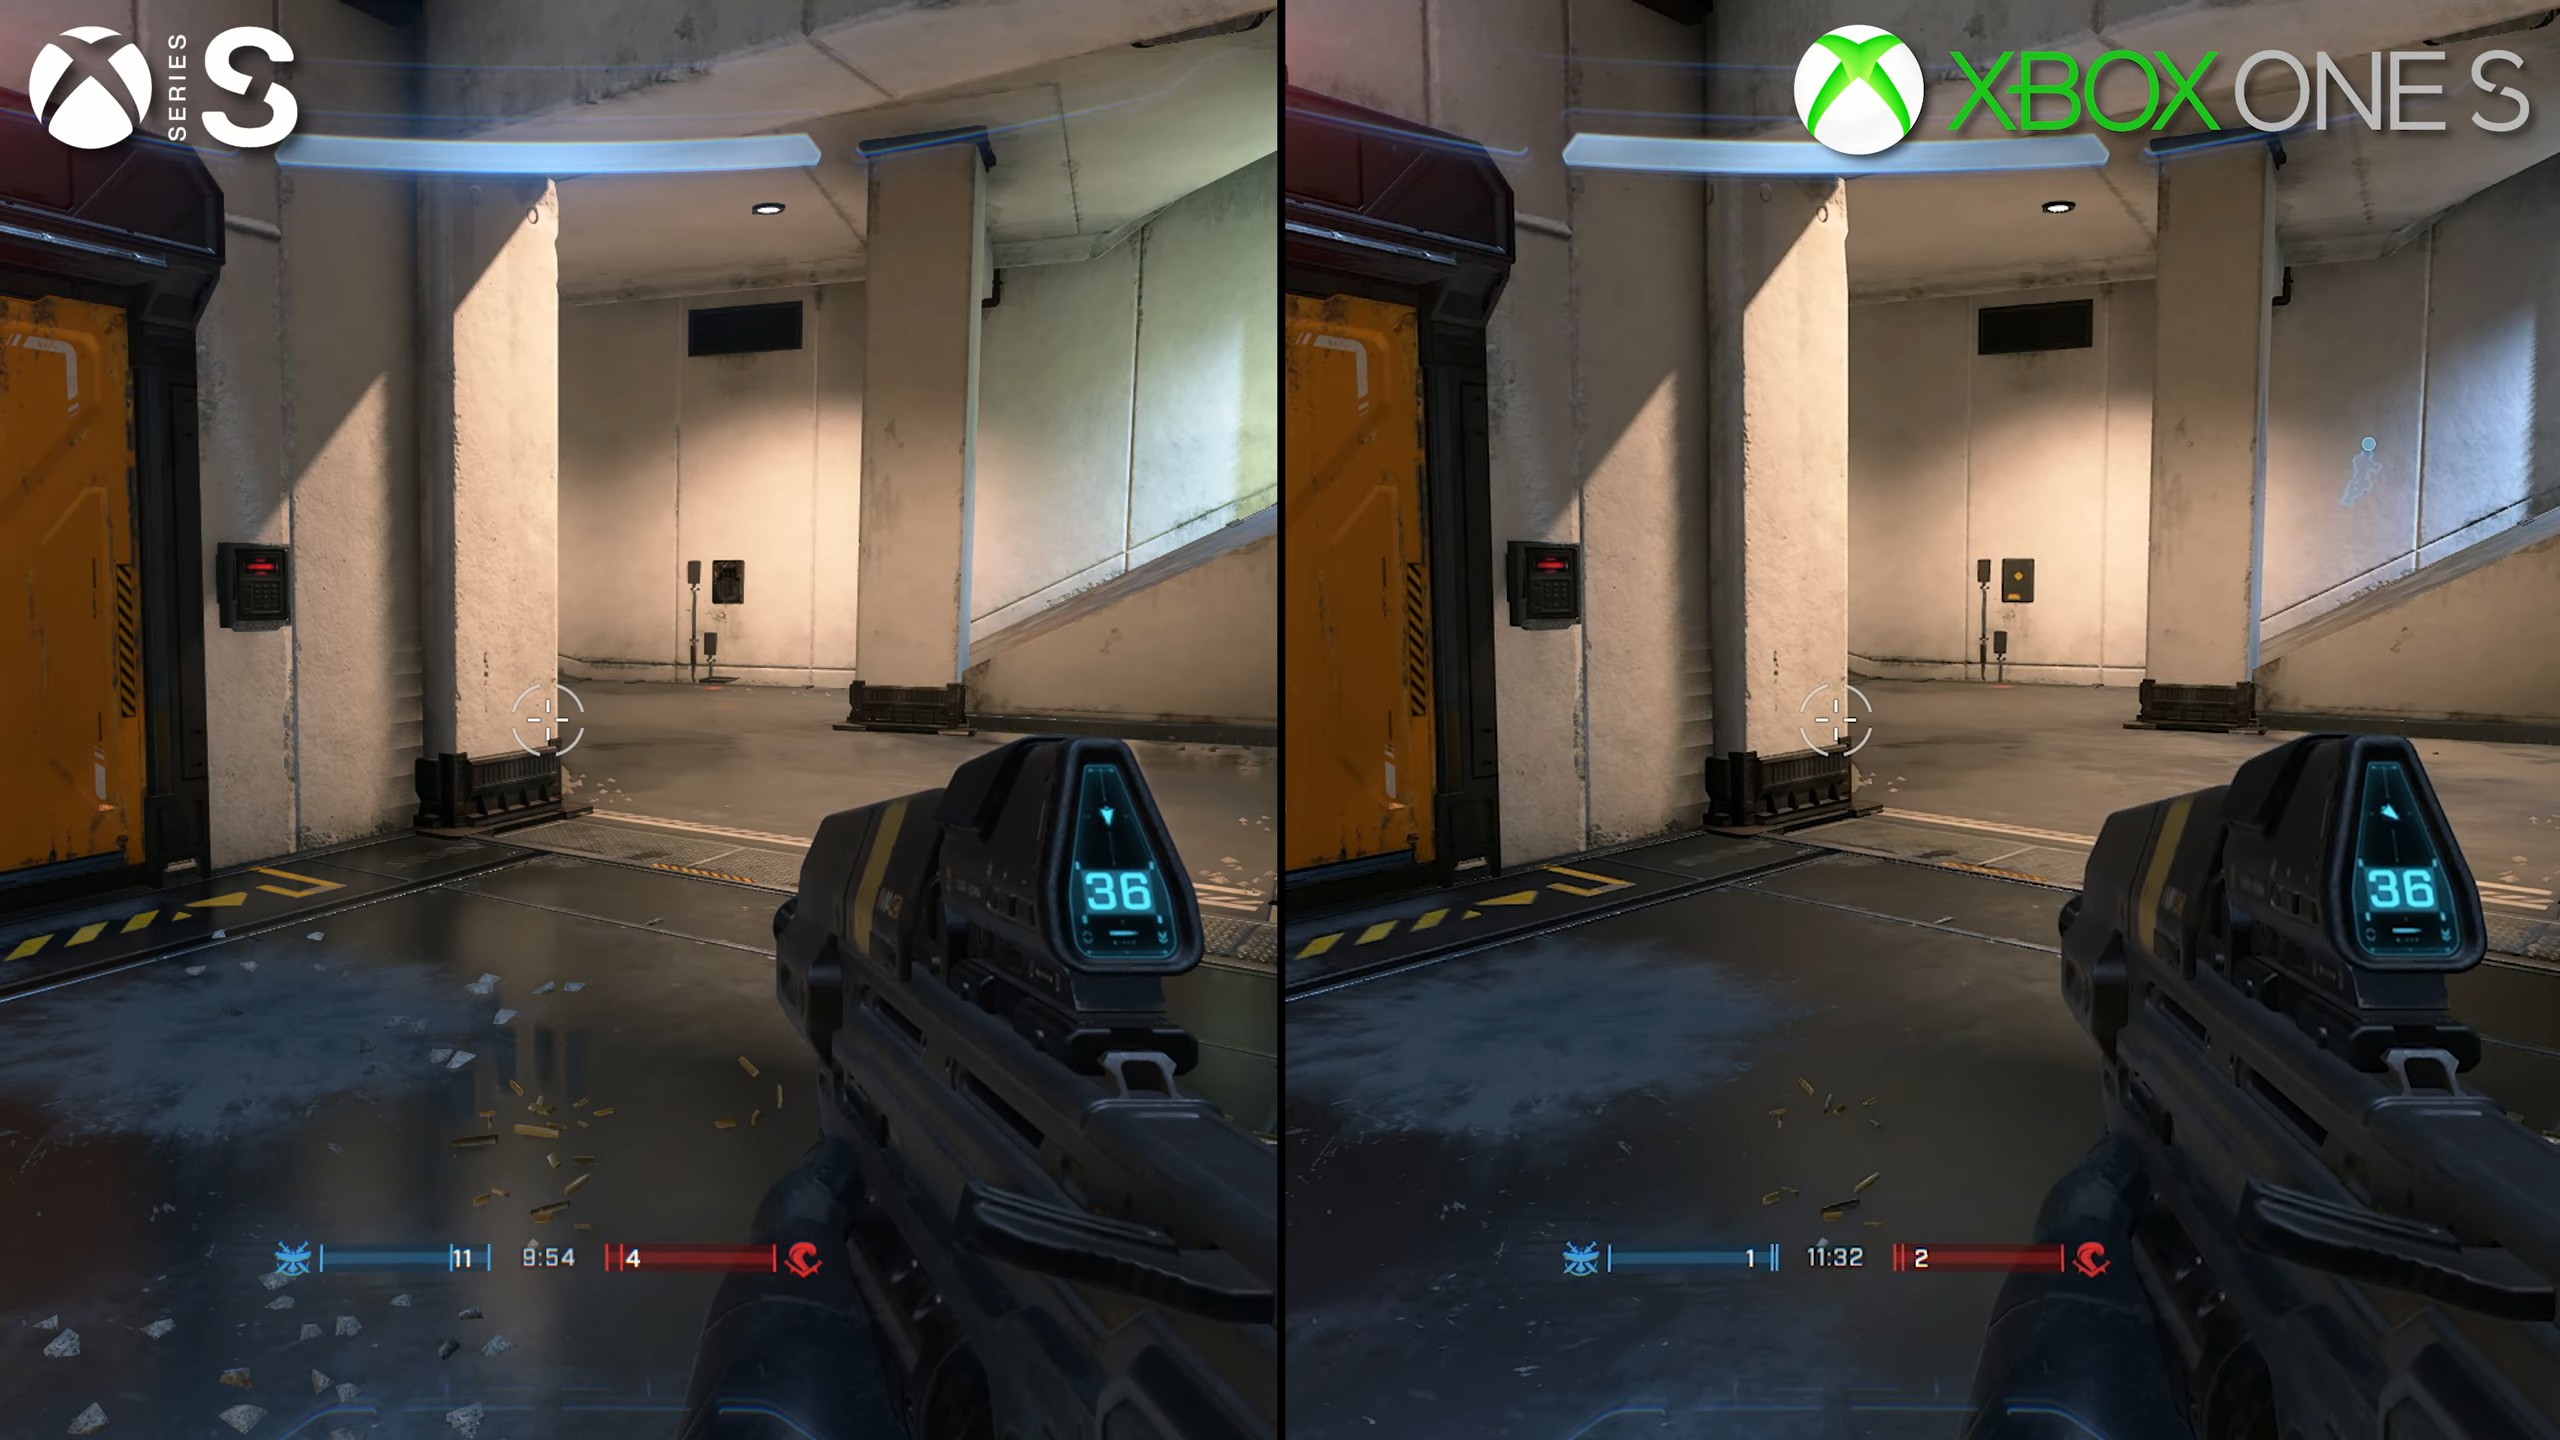 Comparaison entre la série Halo et le jeu